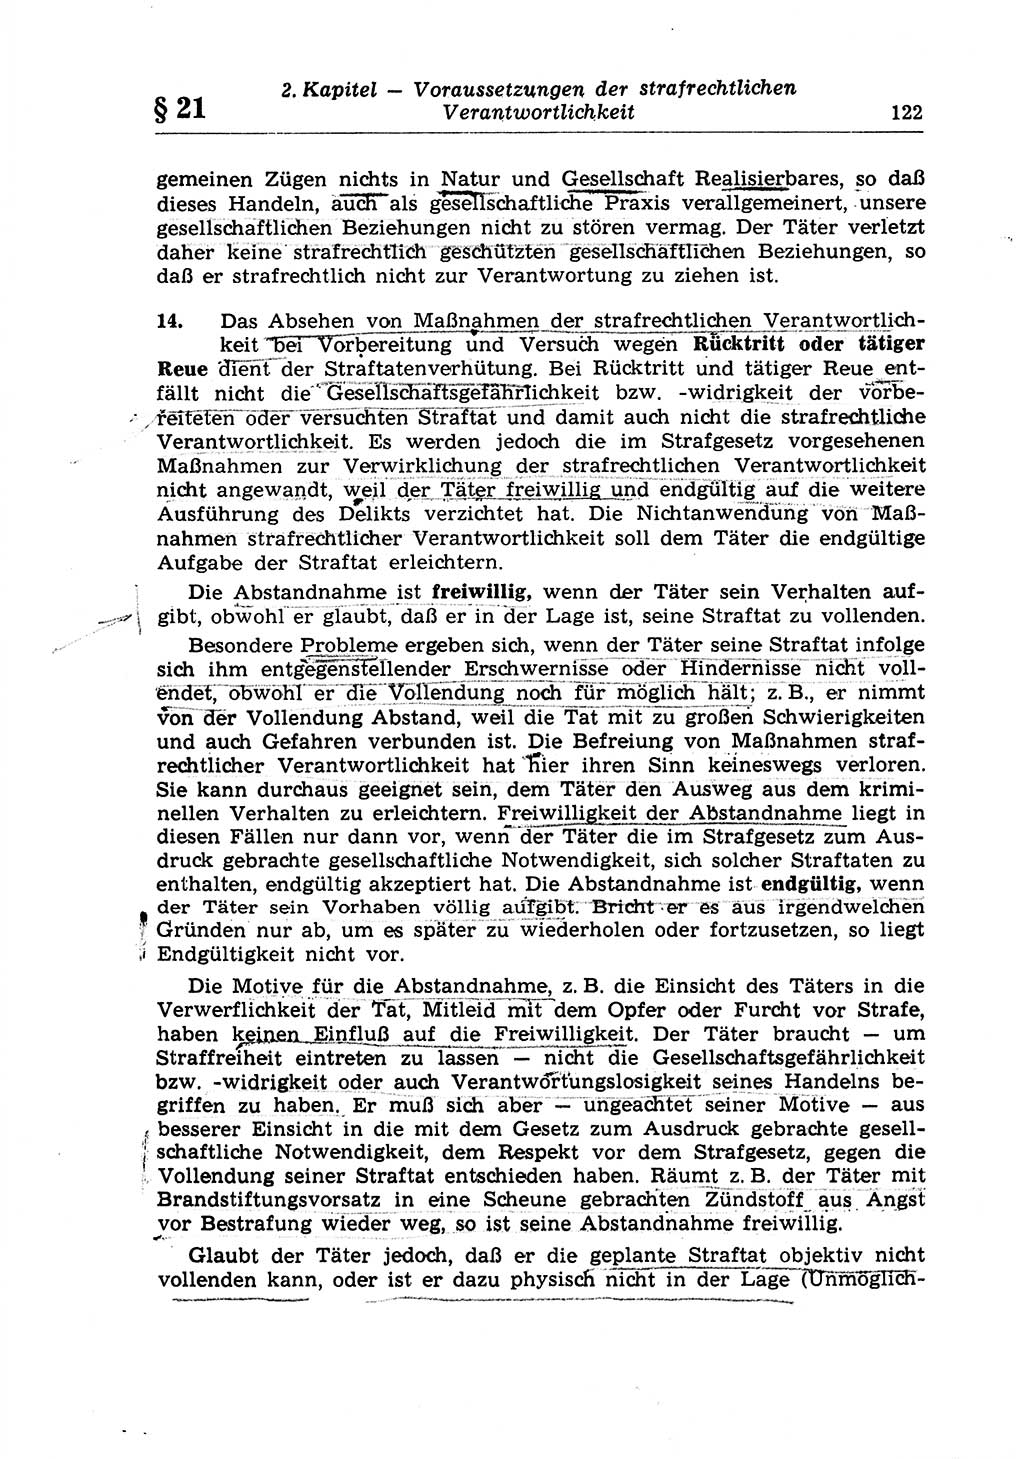 Strafrecht der Deutschen Demokratischen Republik (DDR), Lehrkommentar zum Strafgesetzbuch (StGB), Allgemeiner Teil 1970, Seite 122 (Strafr. DDR Lehrkomm. StGB AT 1970, S. 122)